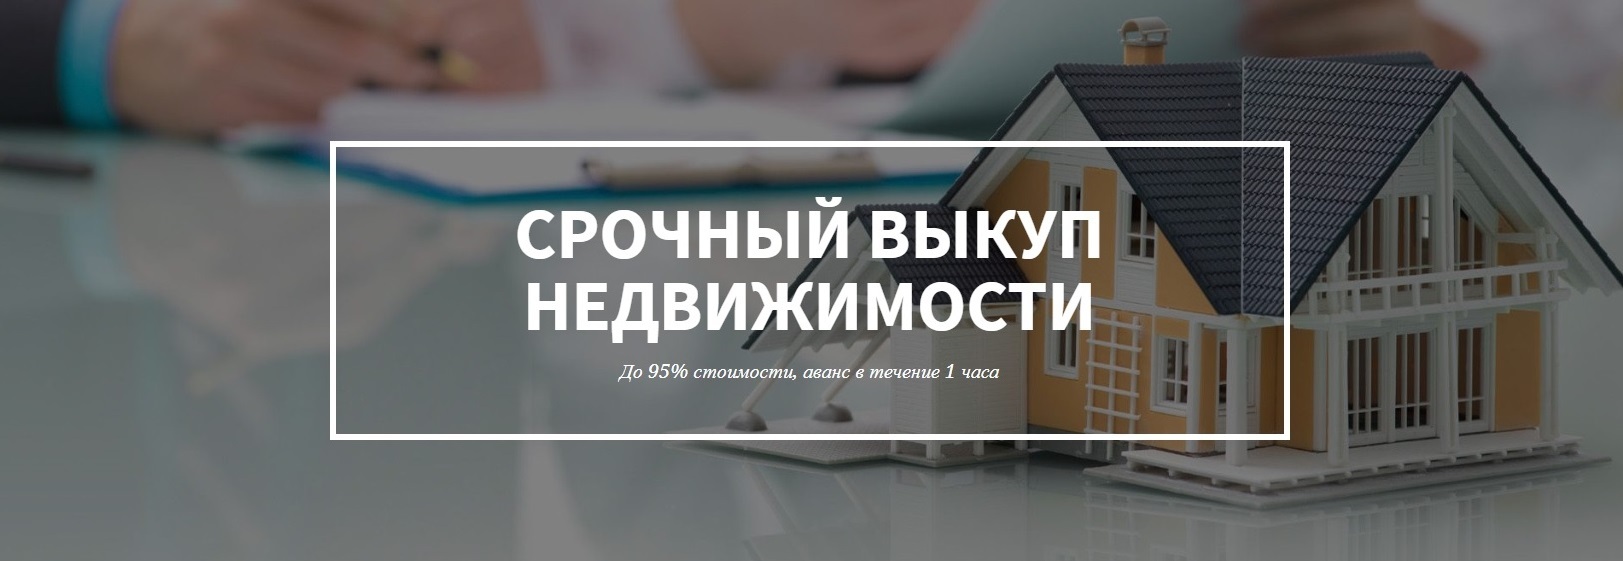 дизайн картинка выкупа недвижимости в Якутске